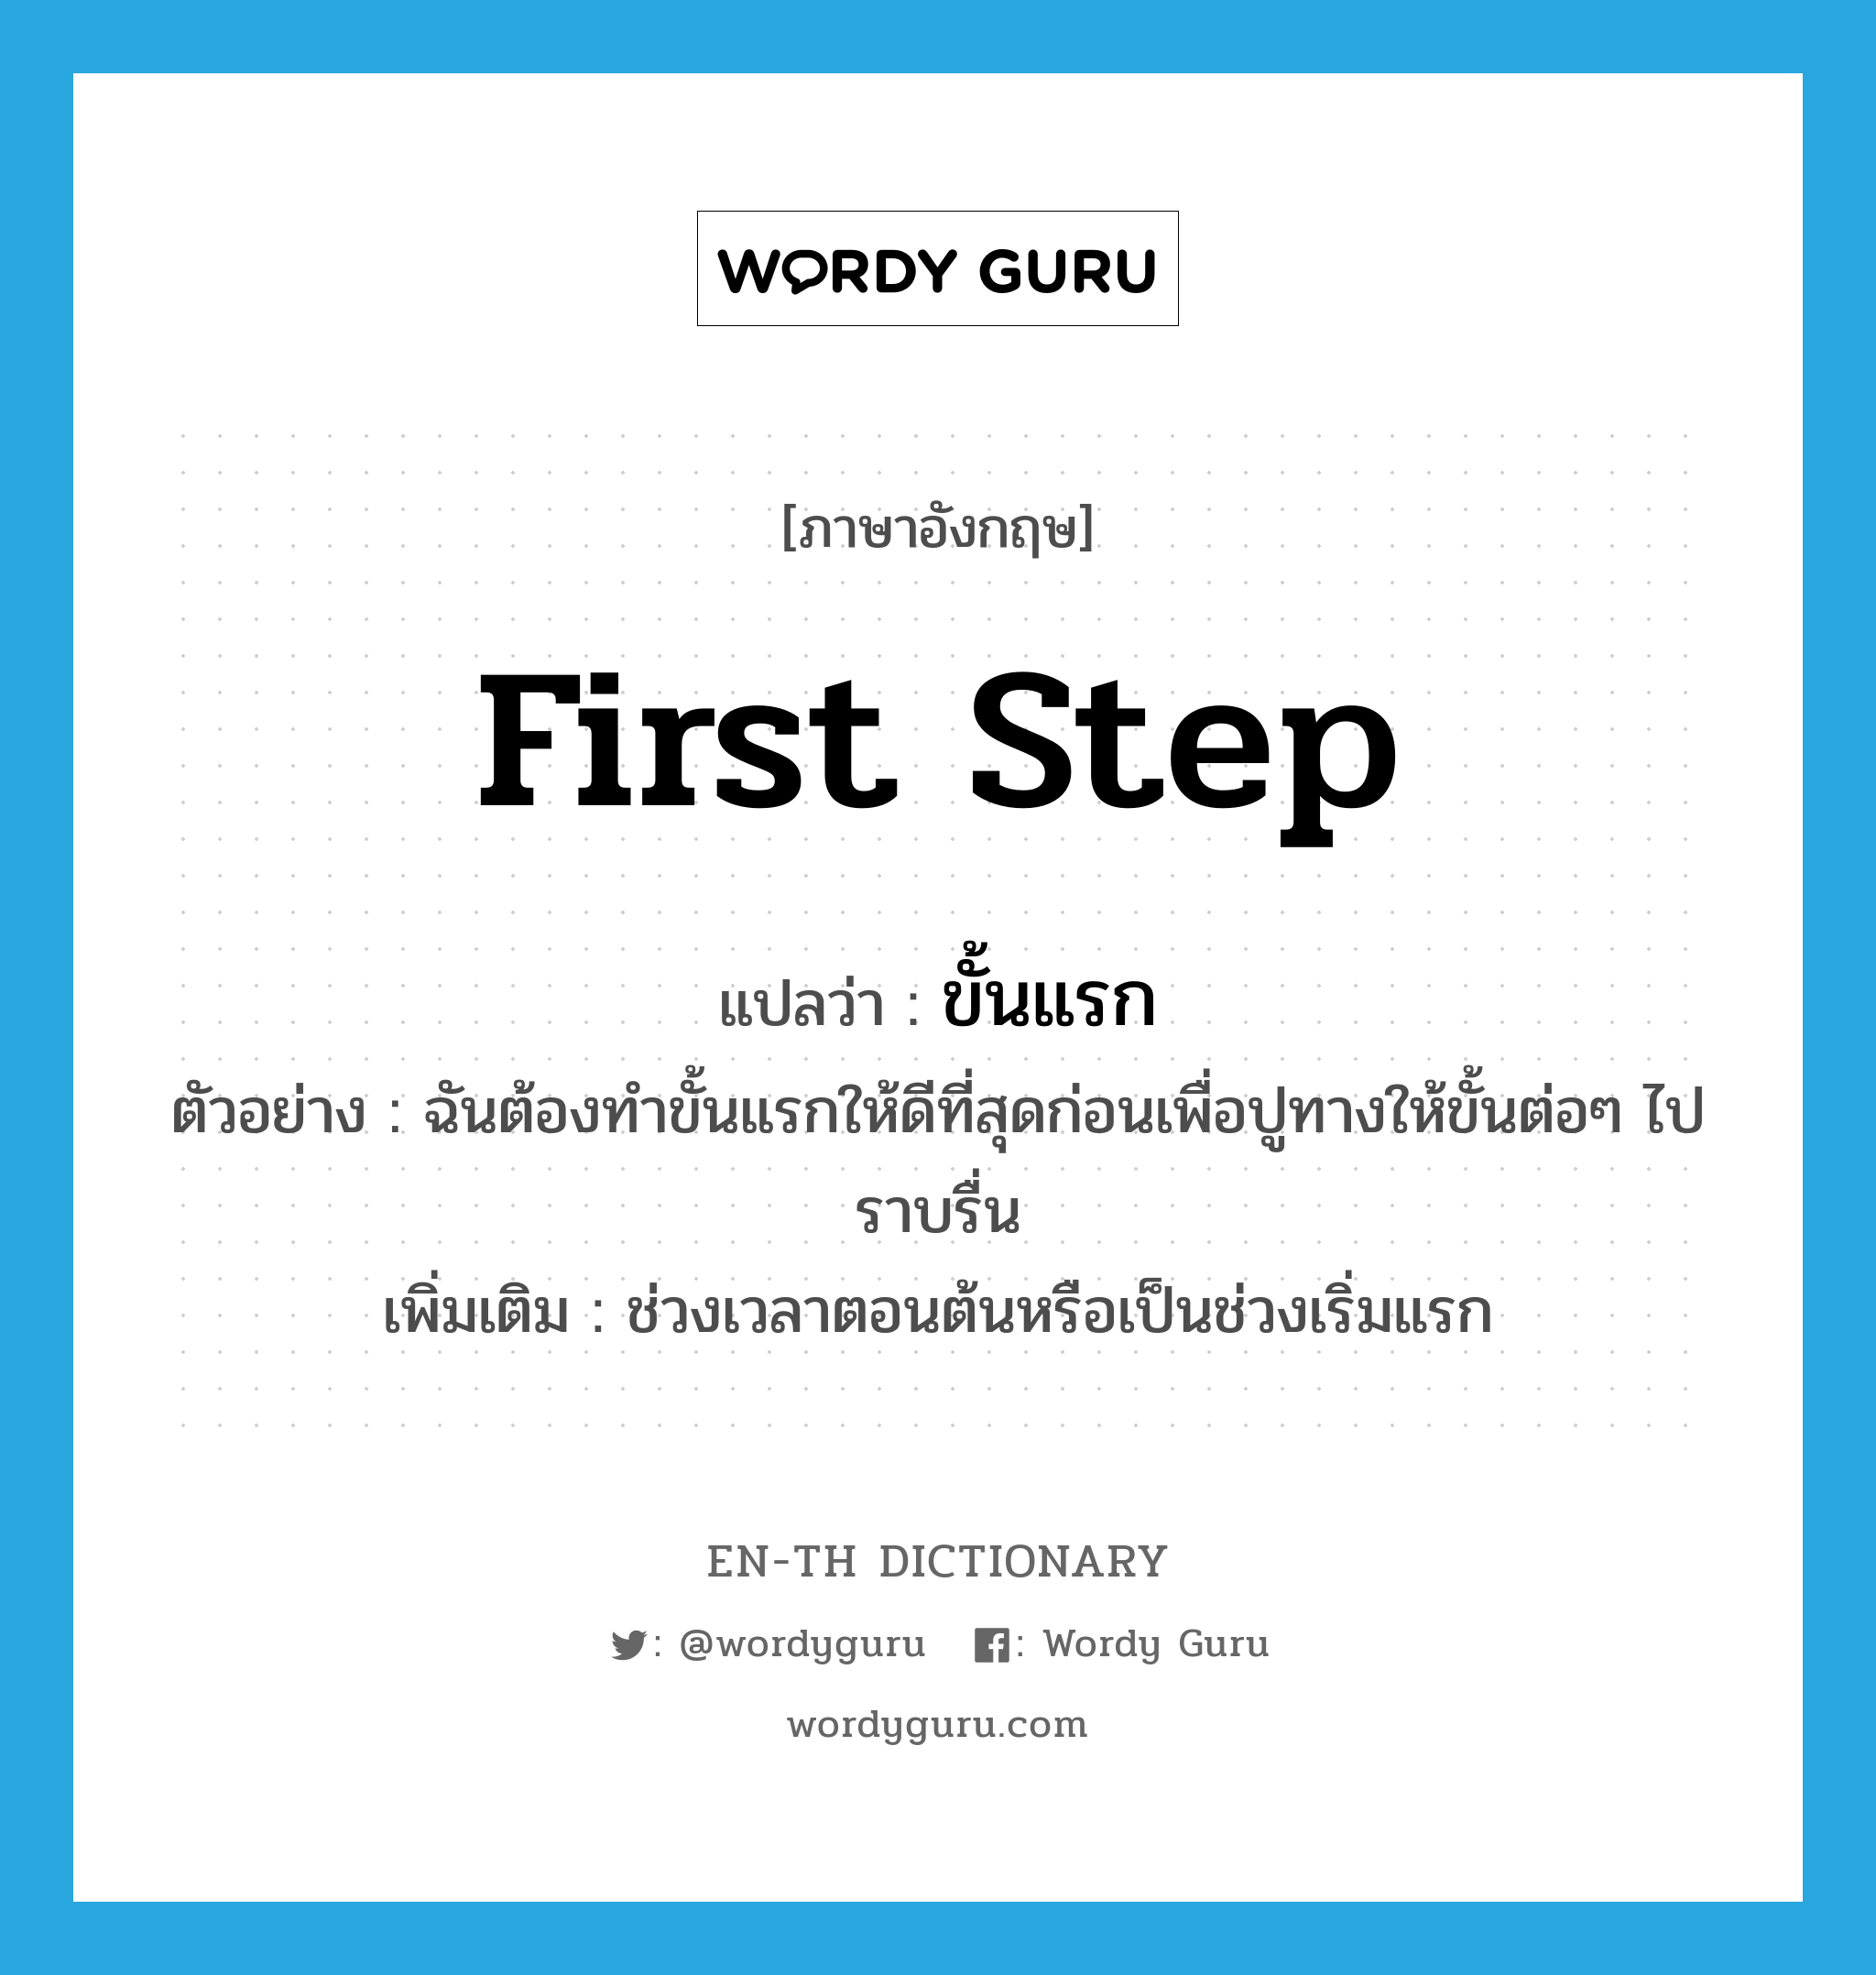 first step แปลว่า?, คำศัพท์ภาษาอังกฤษ first step แปลว่า ขั้นแรก ประเภท N ตัวอย่าง ฉันต้องทำขั้นแรกให้ดีที่สุดก่อนเพื่อปูทางให้ขั้นต่อๆ ไปราบรื่น เพิ่มเติม ช่วงเวลาตอนต้นหรือเป็นช่วงเริ่มแรก หมวด N